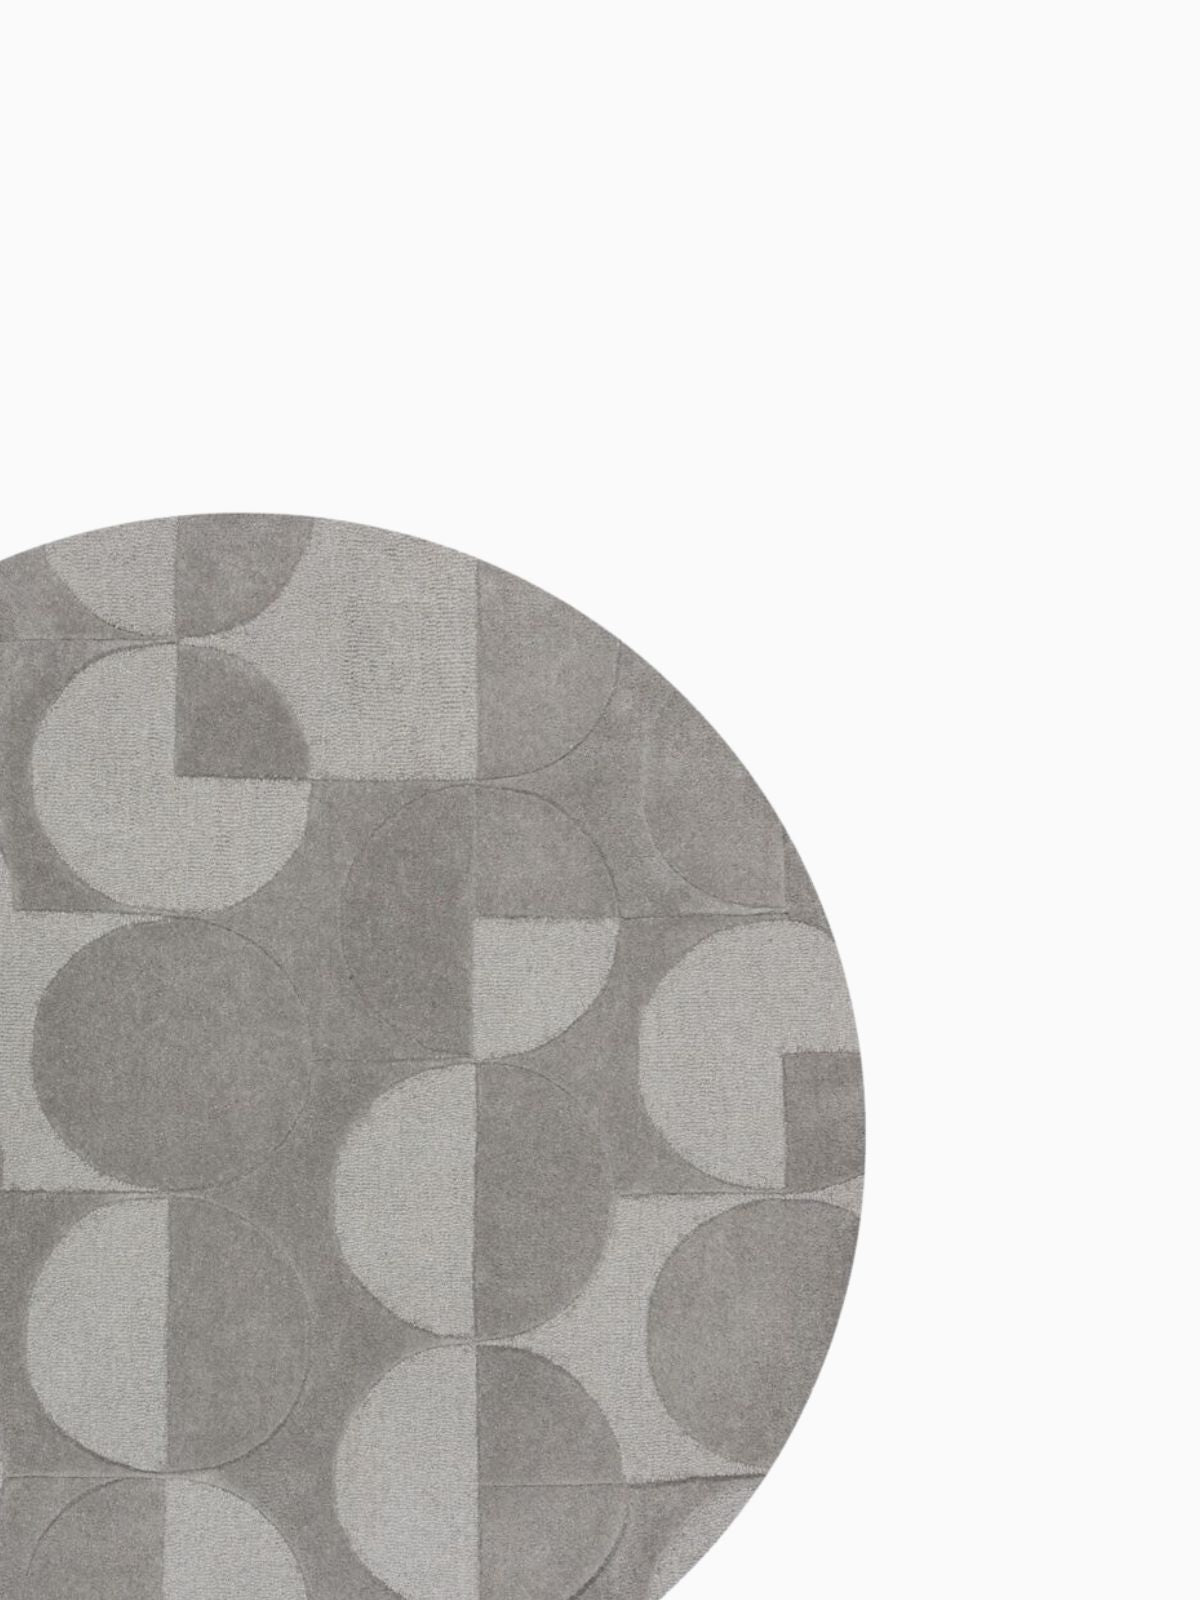 Tappeto rotondo Gigi in lana, colore grigio 160x160 cm.-4